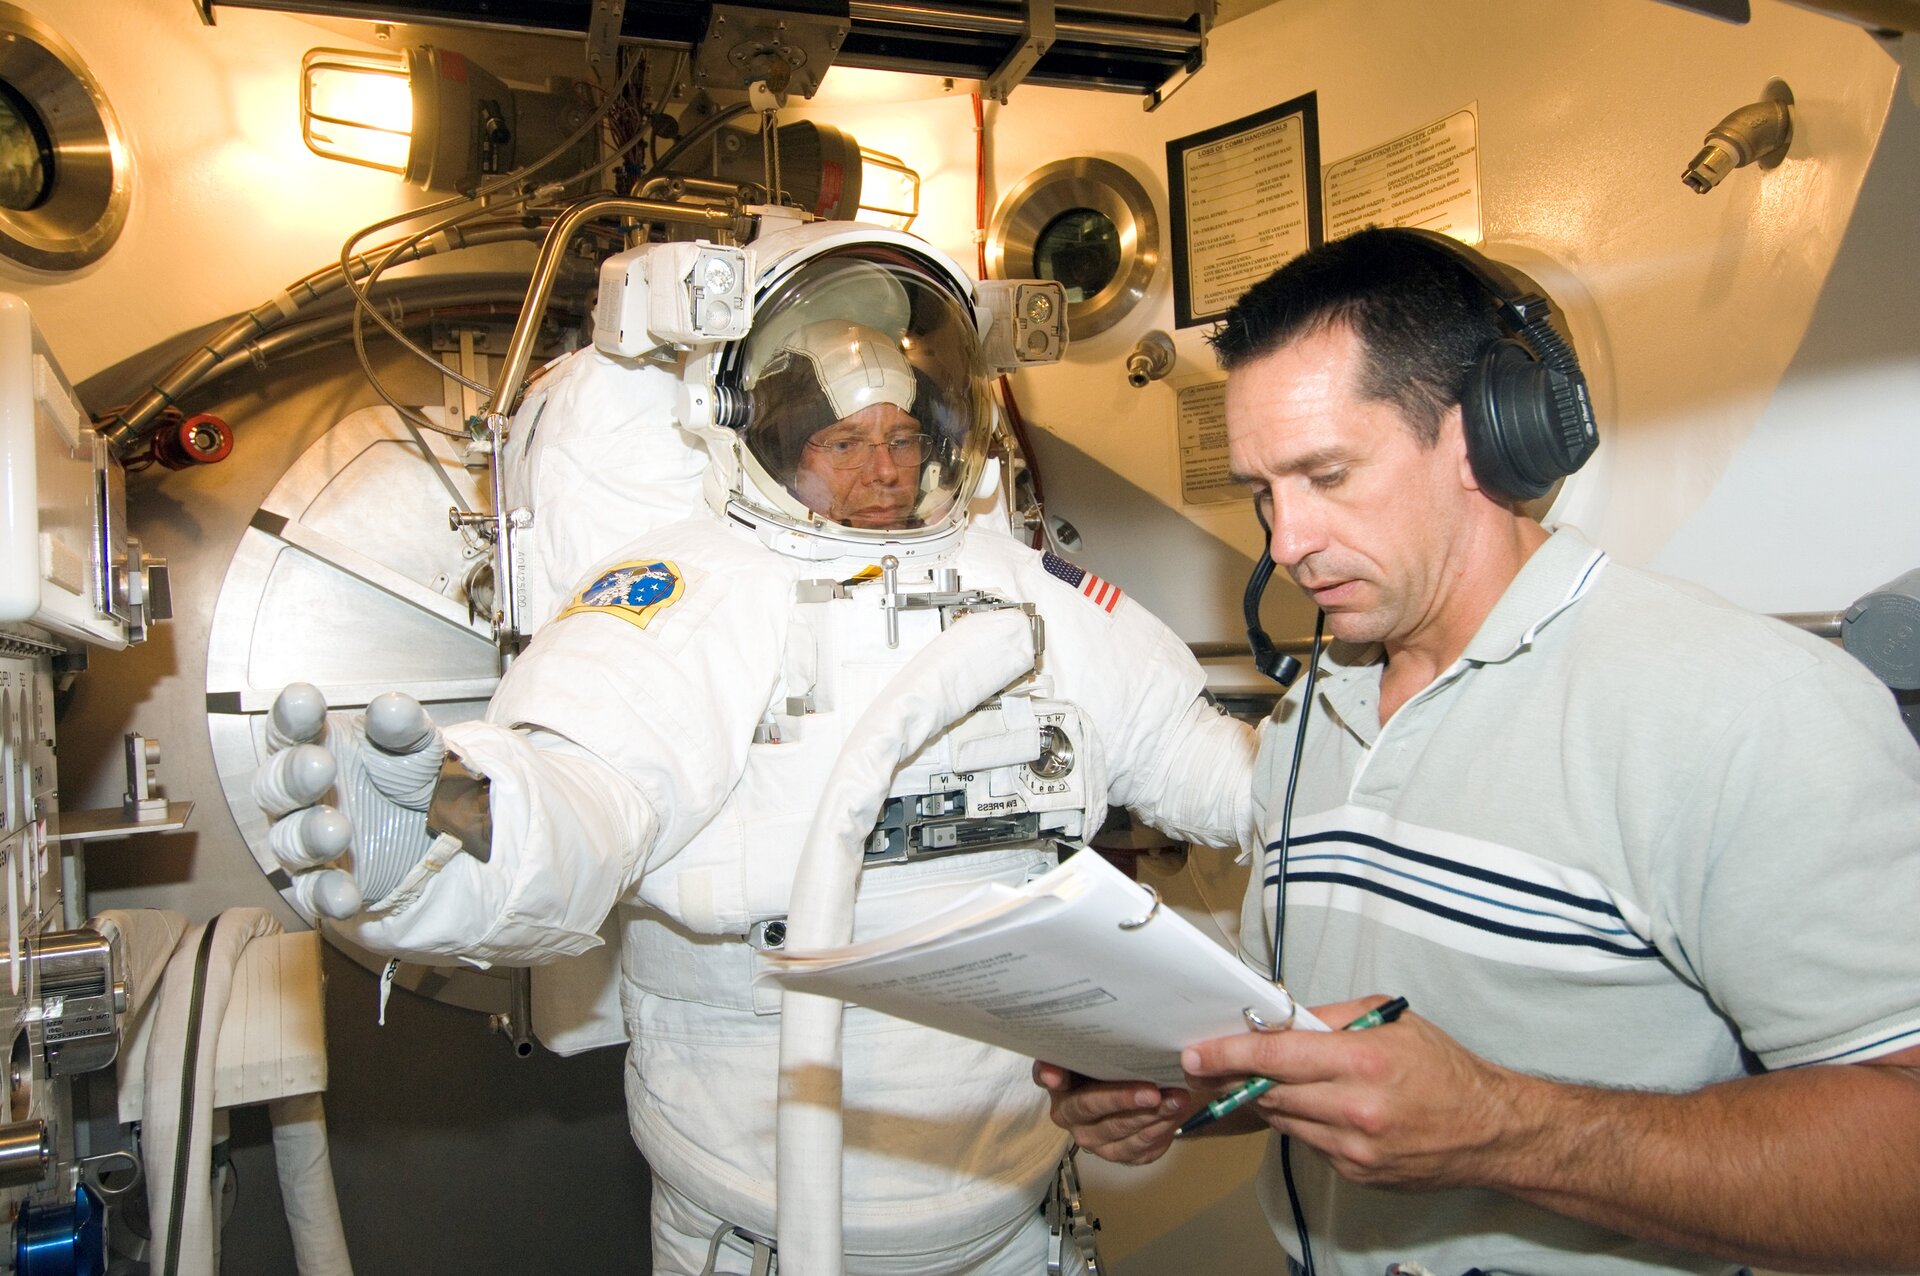 Fuglesang participates in EVA spacesuit fit check